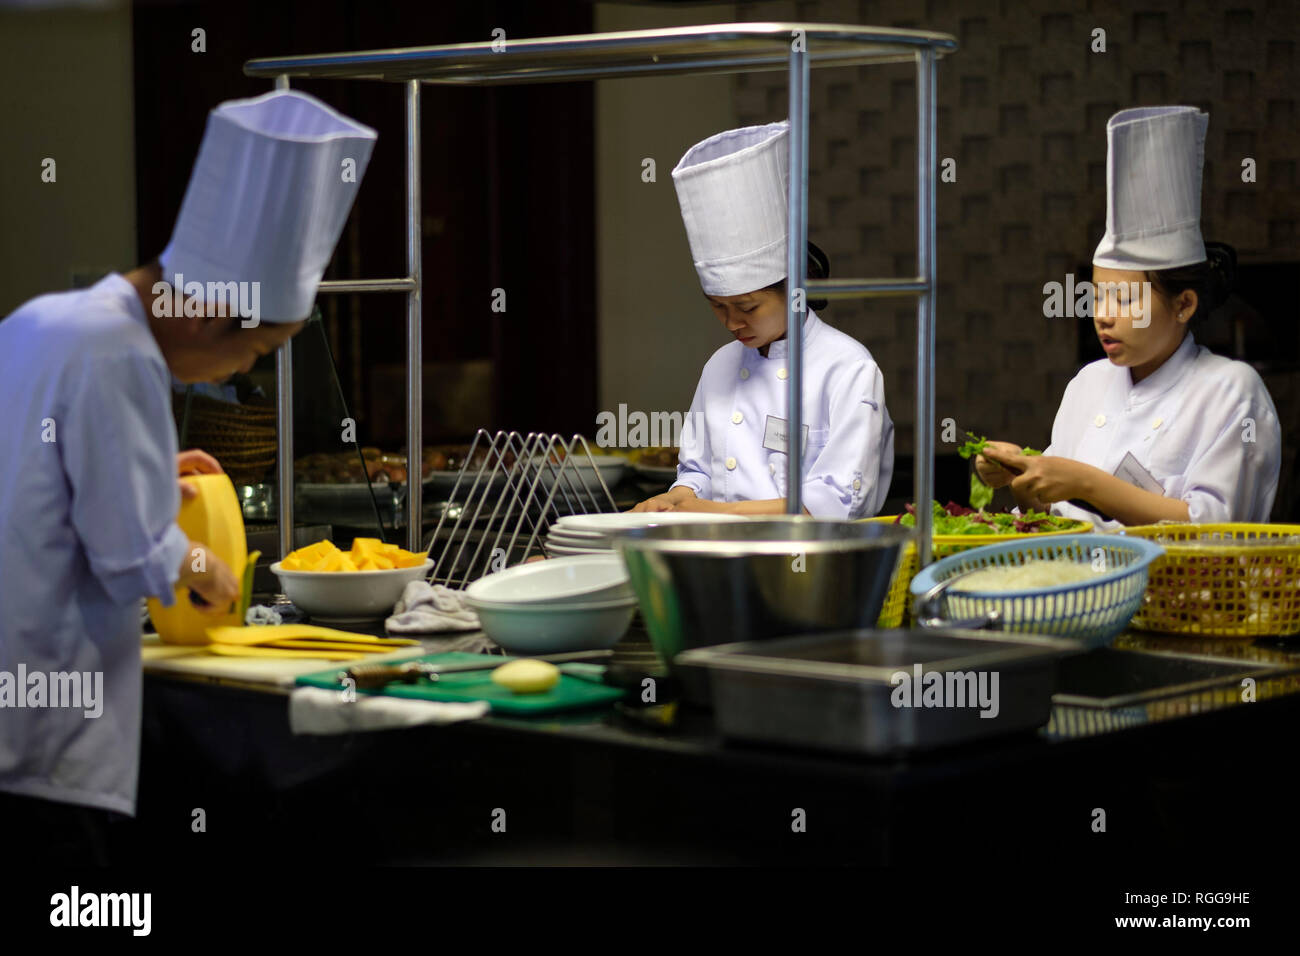 Les cuisiniers préparer les repas au restaurant chinois Banque D'Images